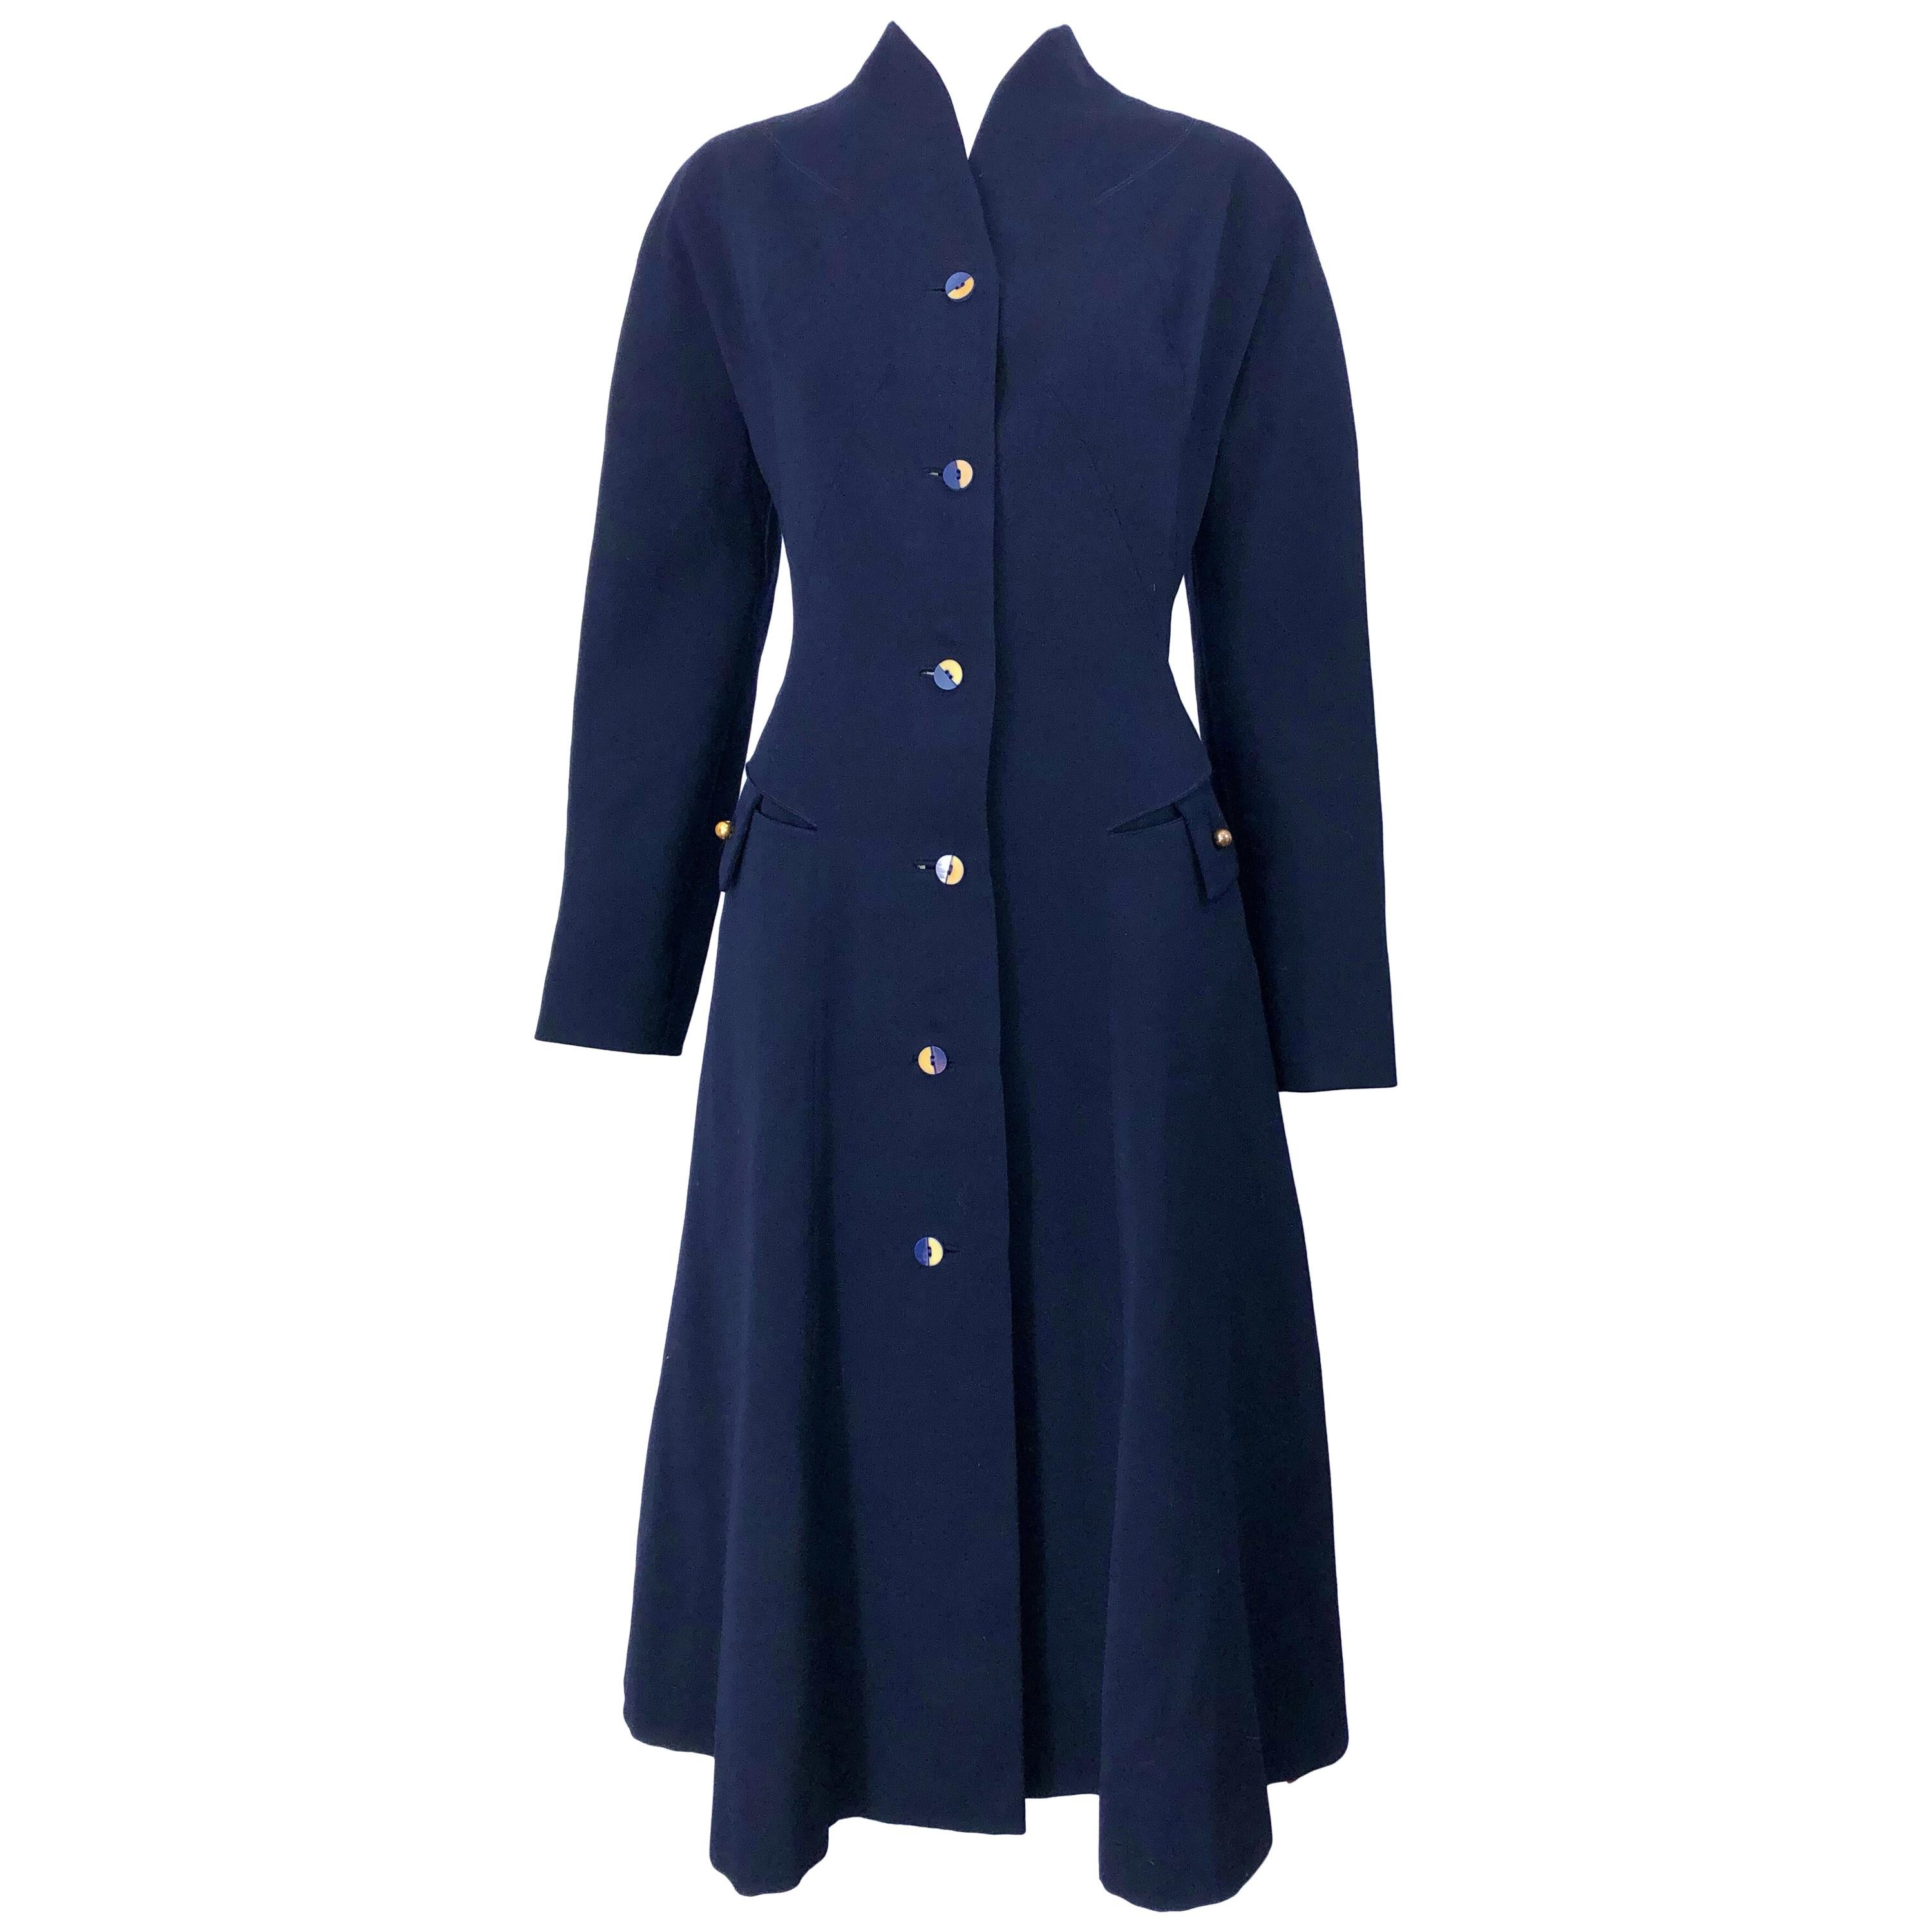 1940s Navy Blue Sleek Deco Style Vintage 40s Princess Jacket Coat